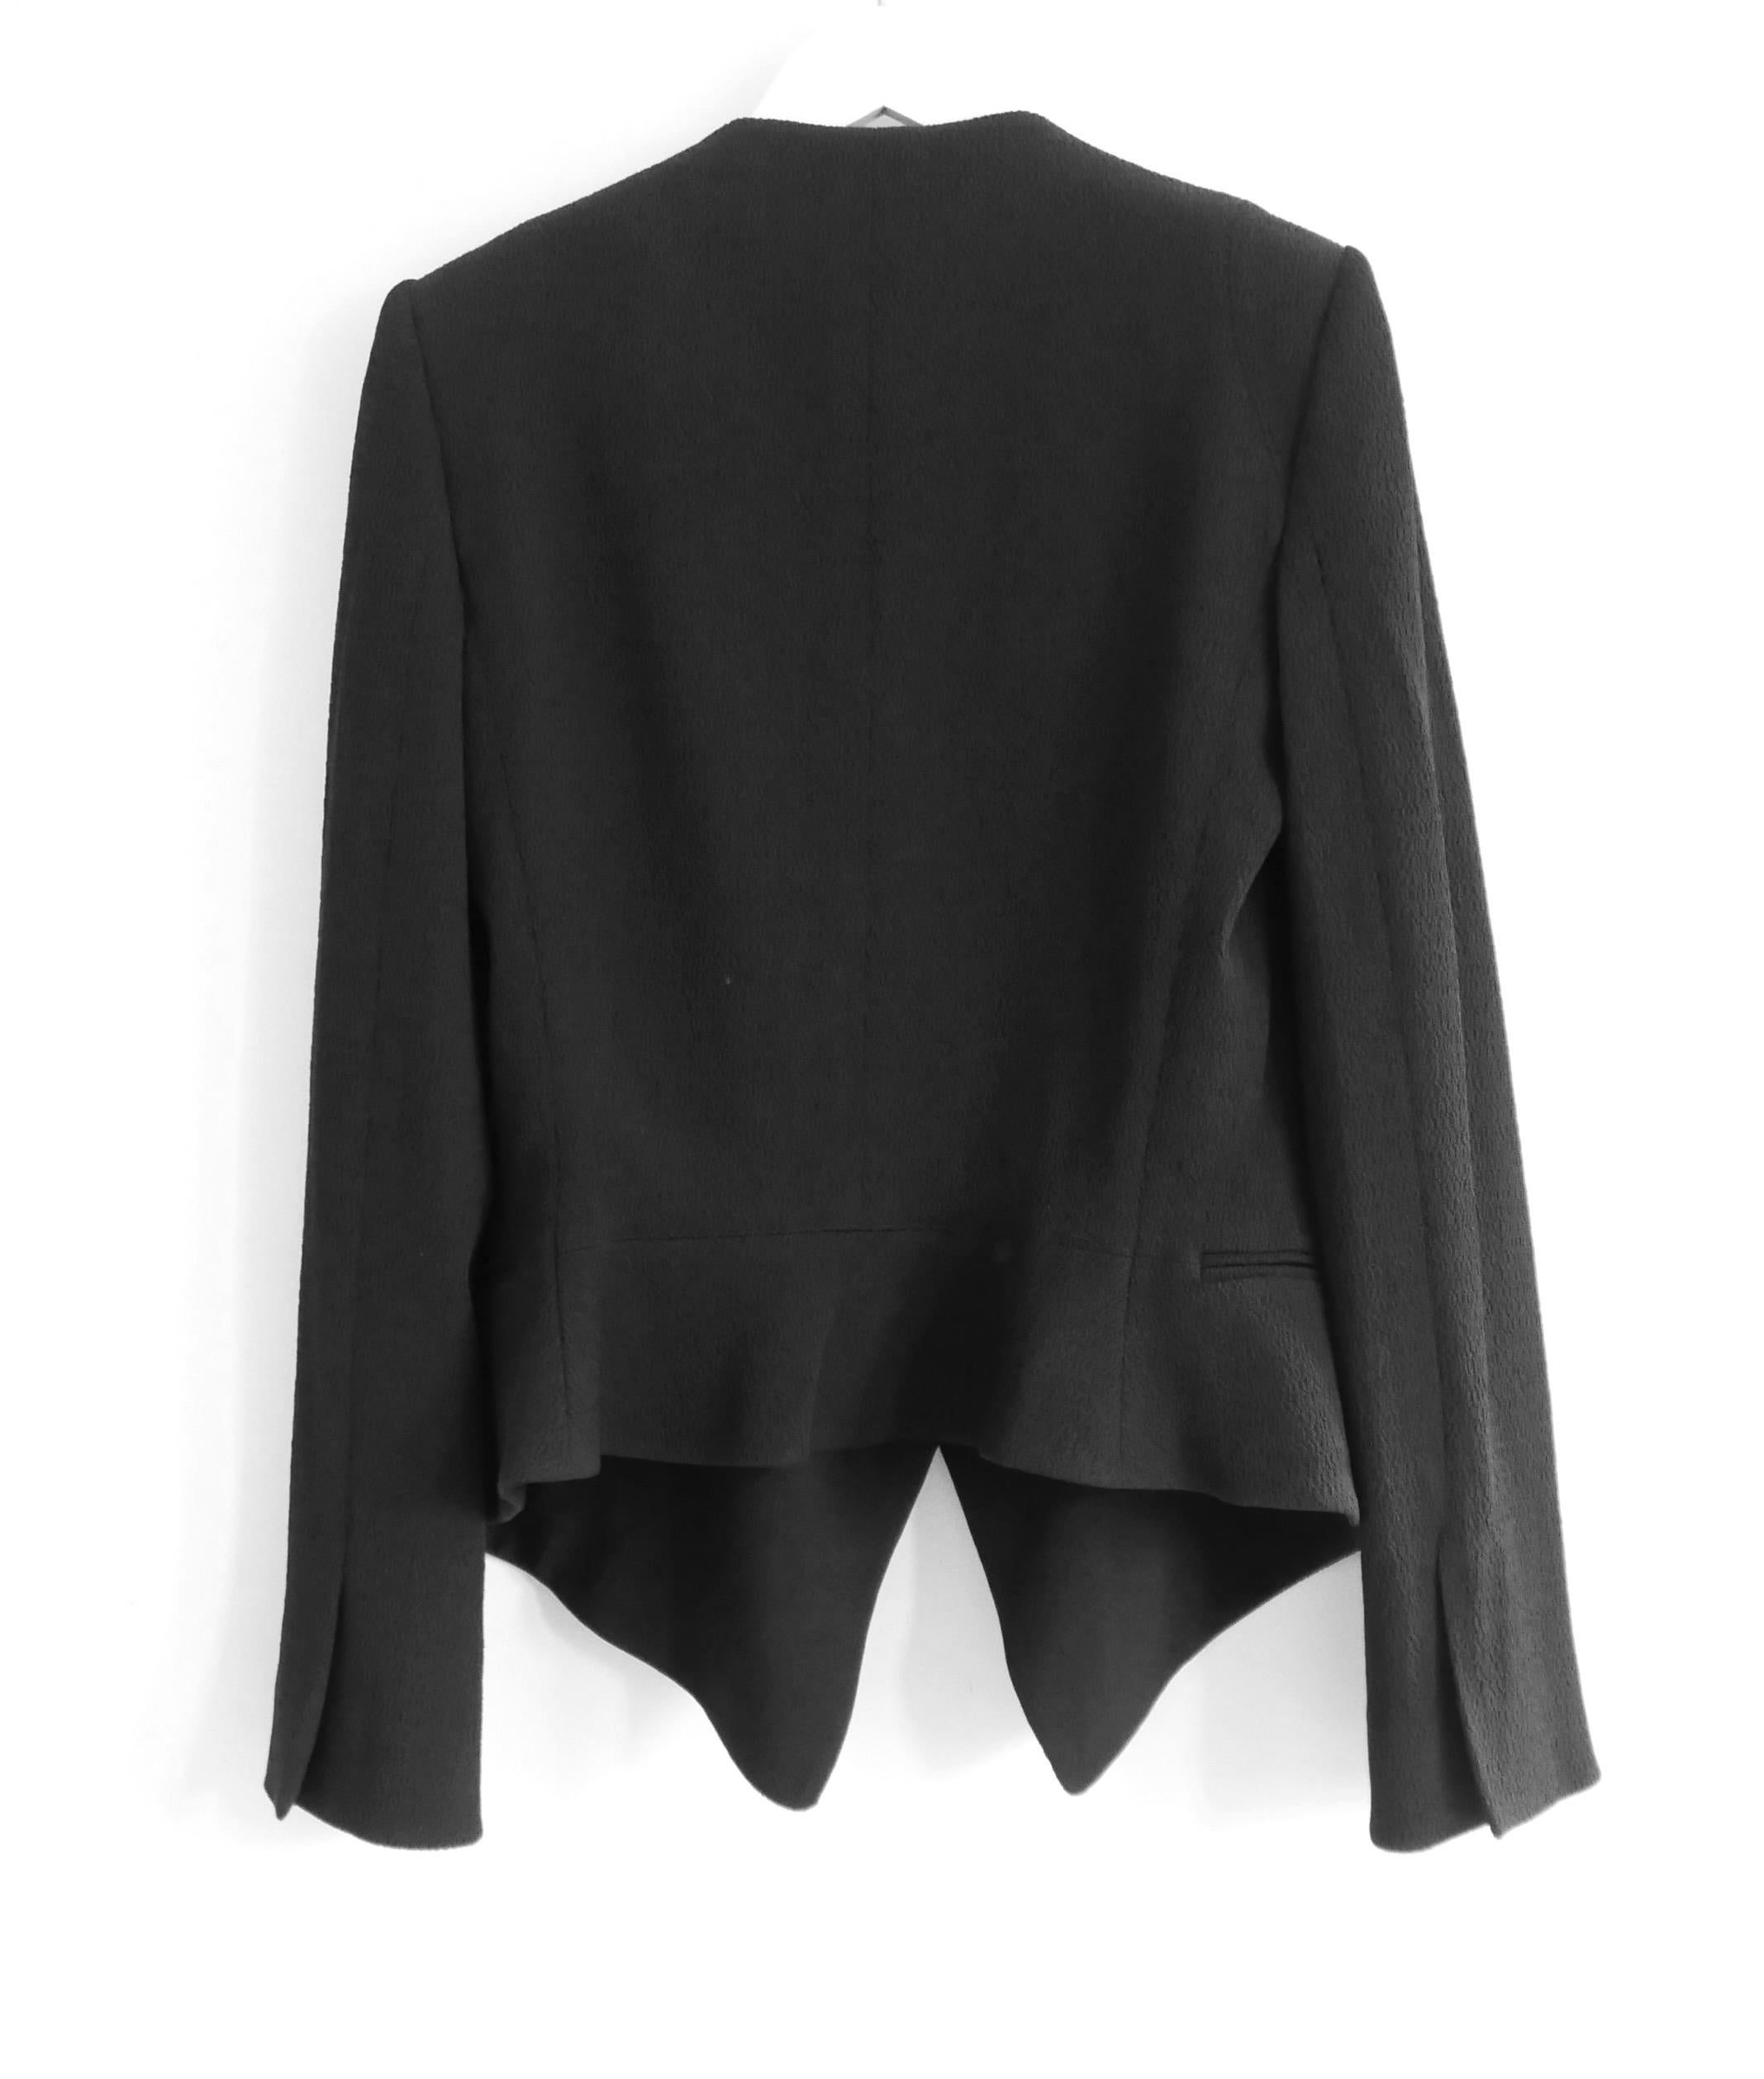 Chloe black textured tuxedo inspired jacket blazer For Sale 1